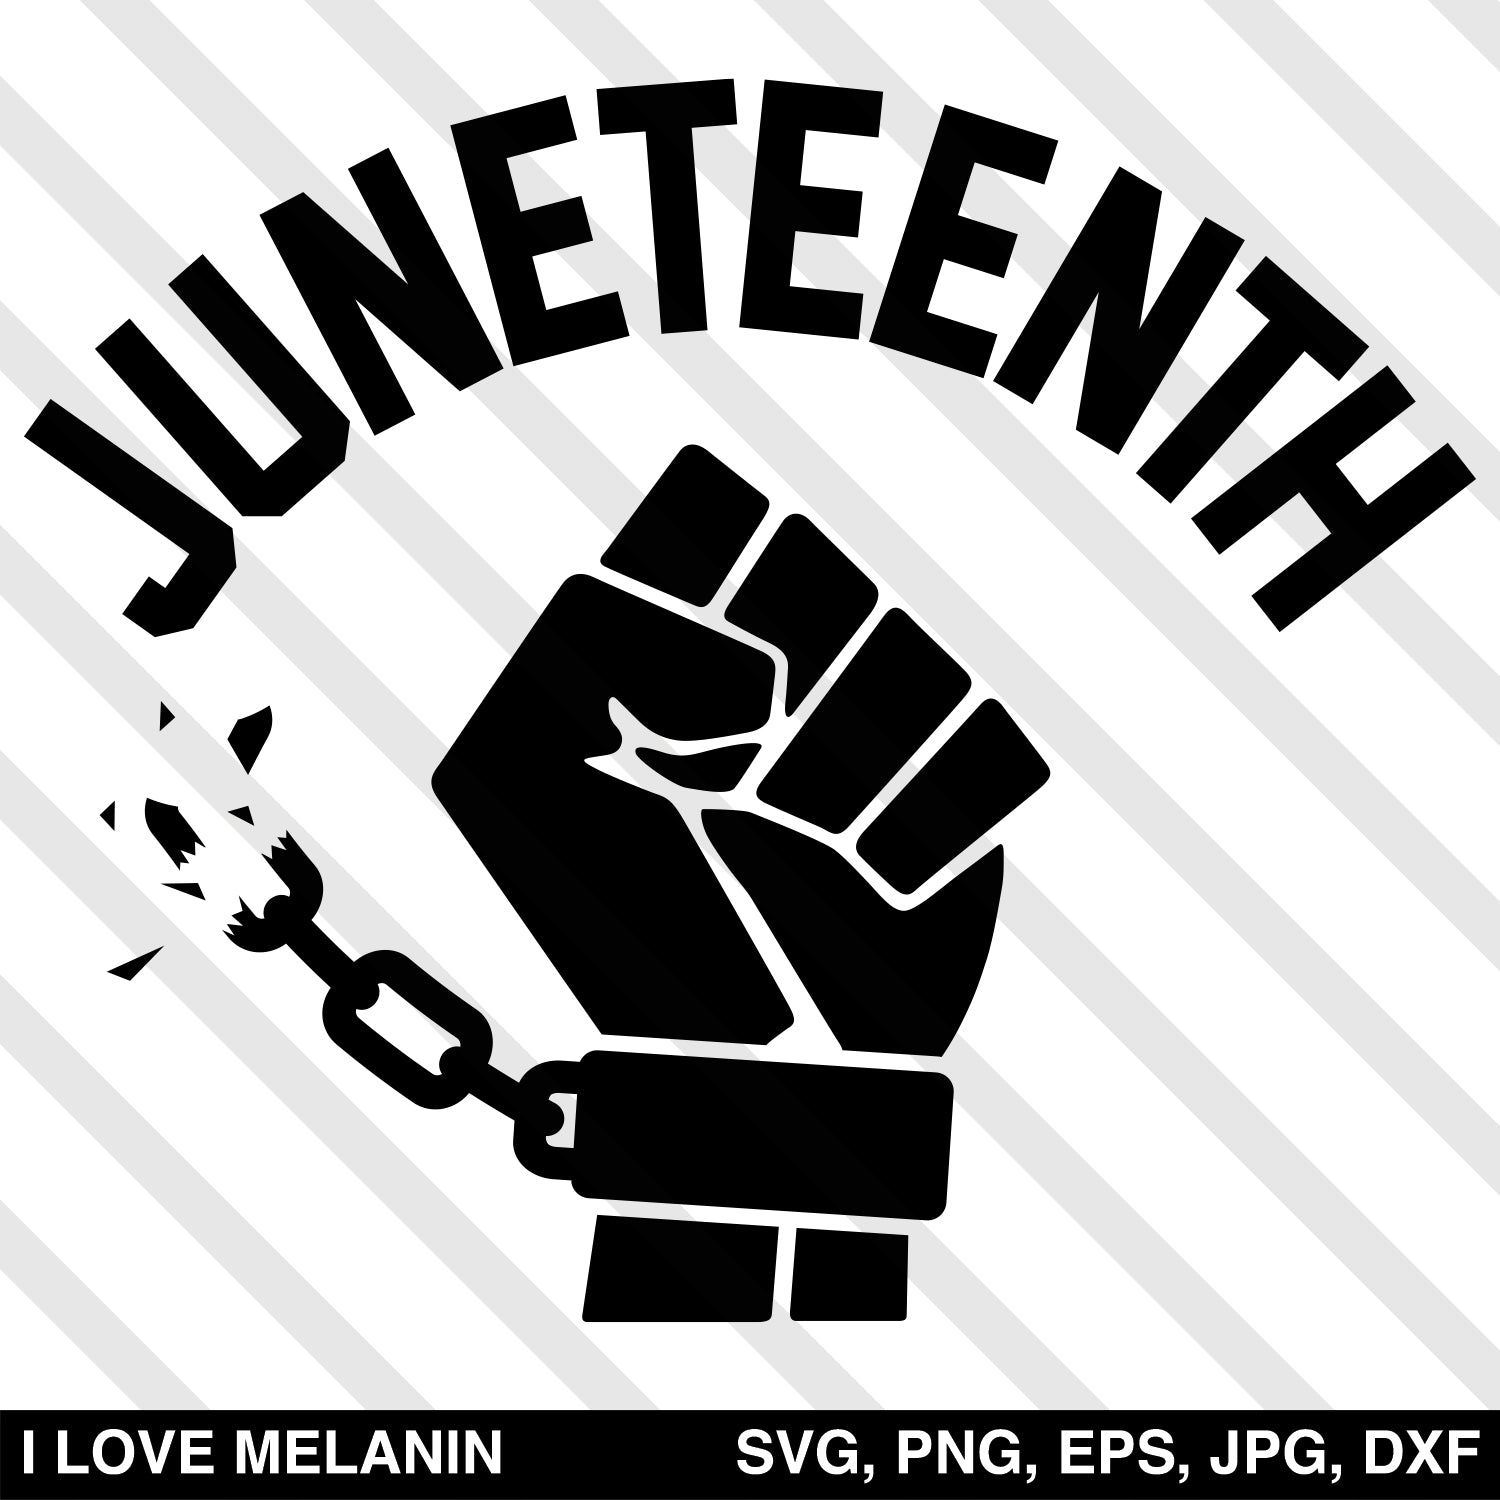 Download Juneteenth Freedom Fist Svg I Love Melanin SVG, PNG, EPS, DXF File